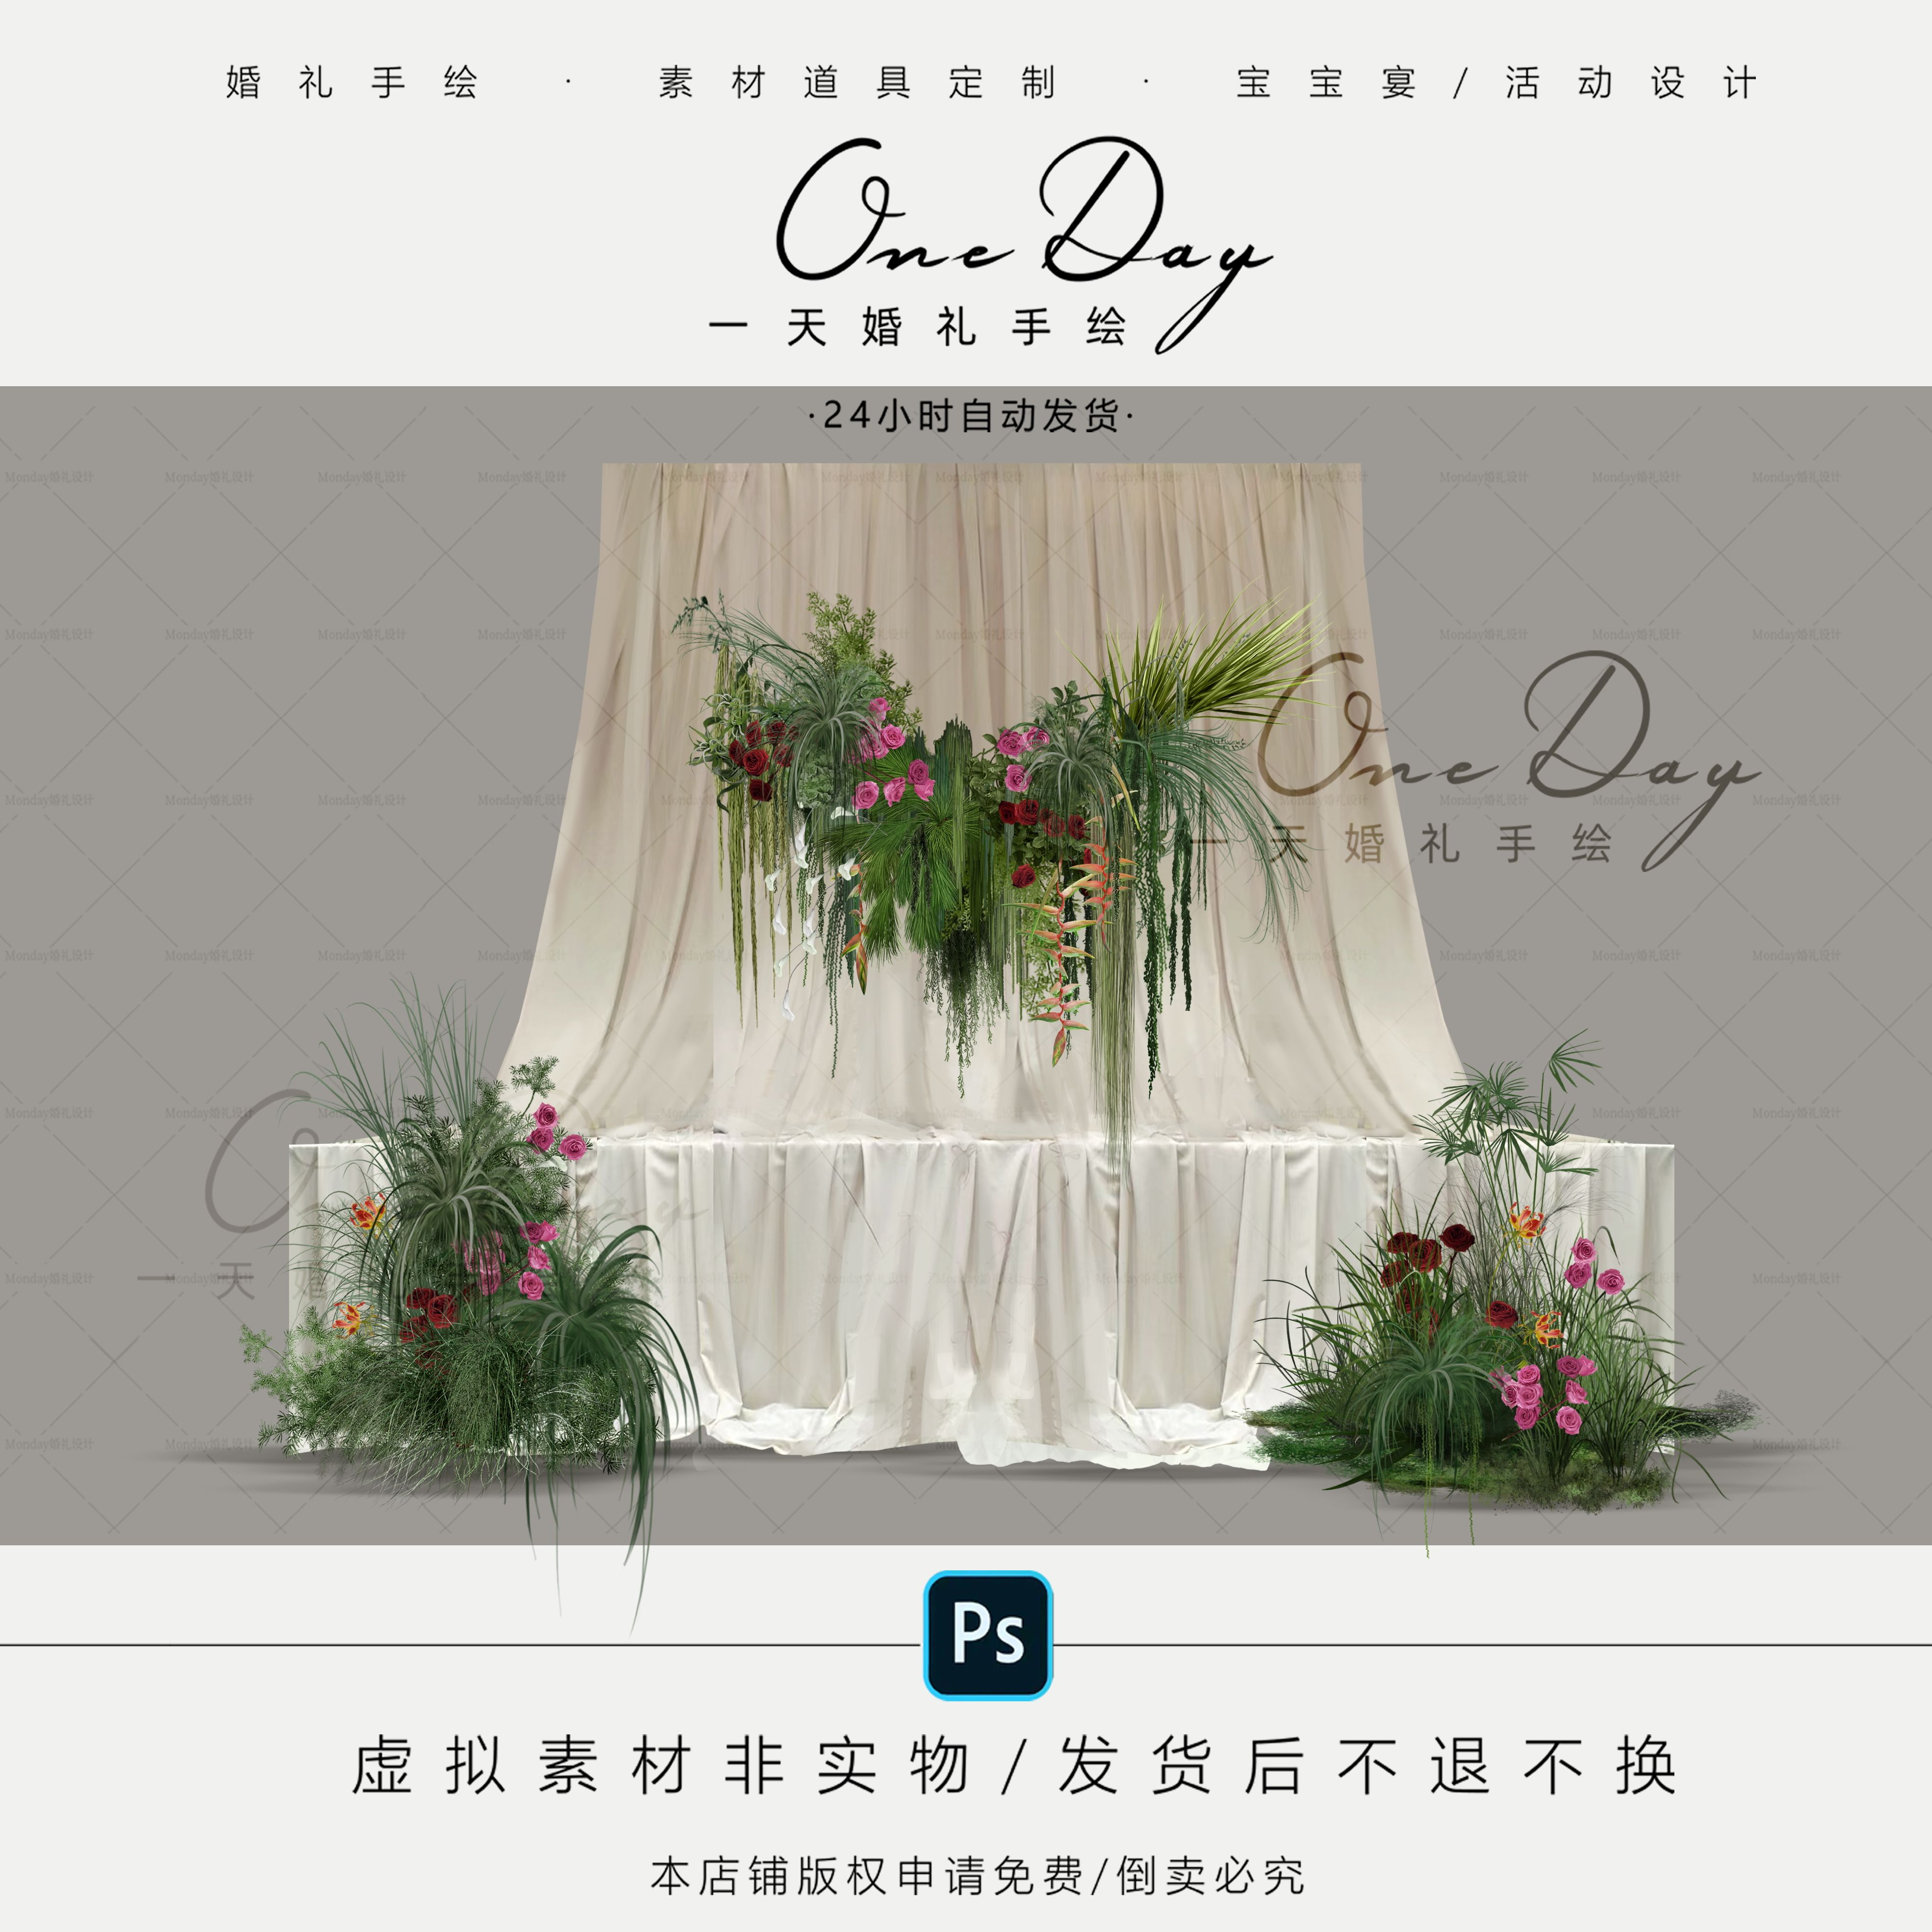 C121小众绿植婚礼花艺素材PSD源文件甜品桌布幔造型婚礼效果图